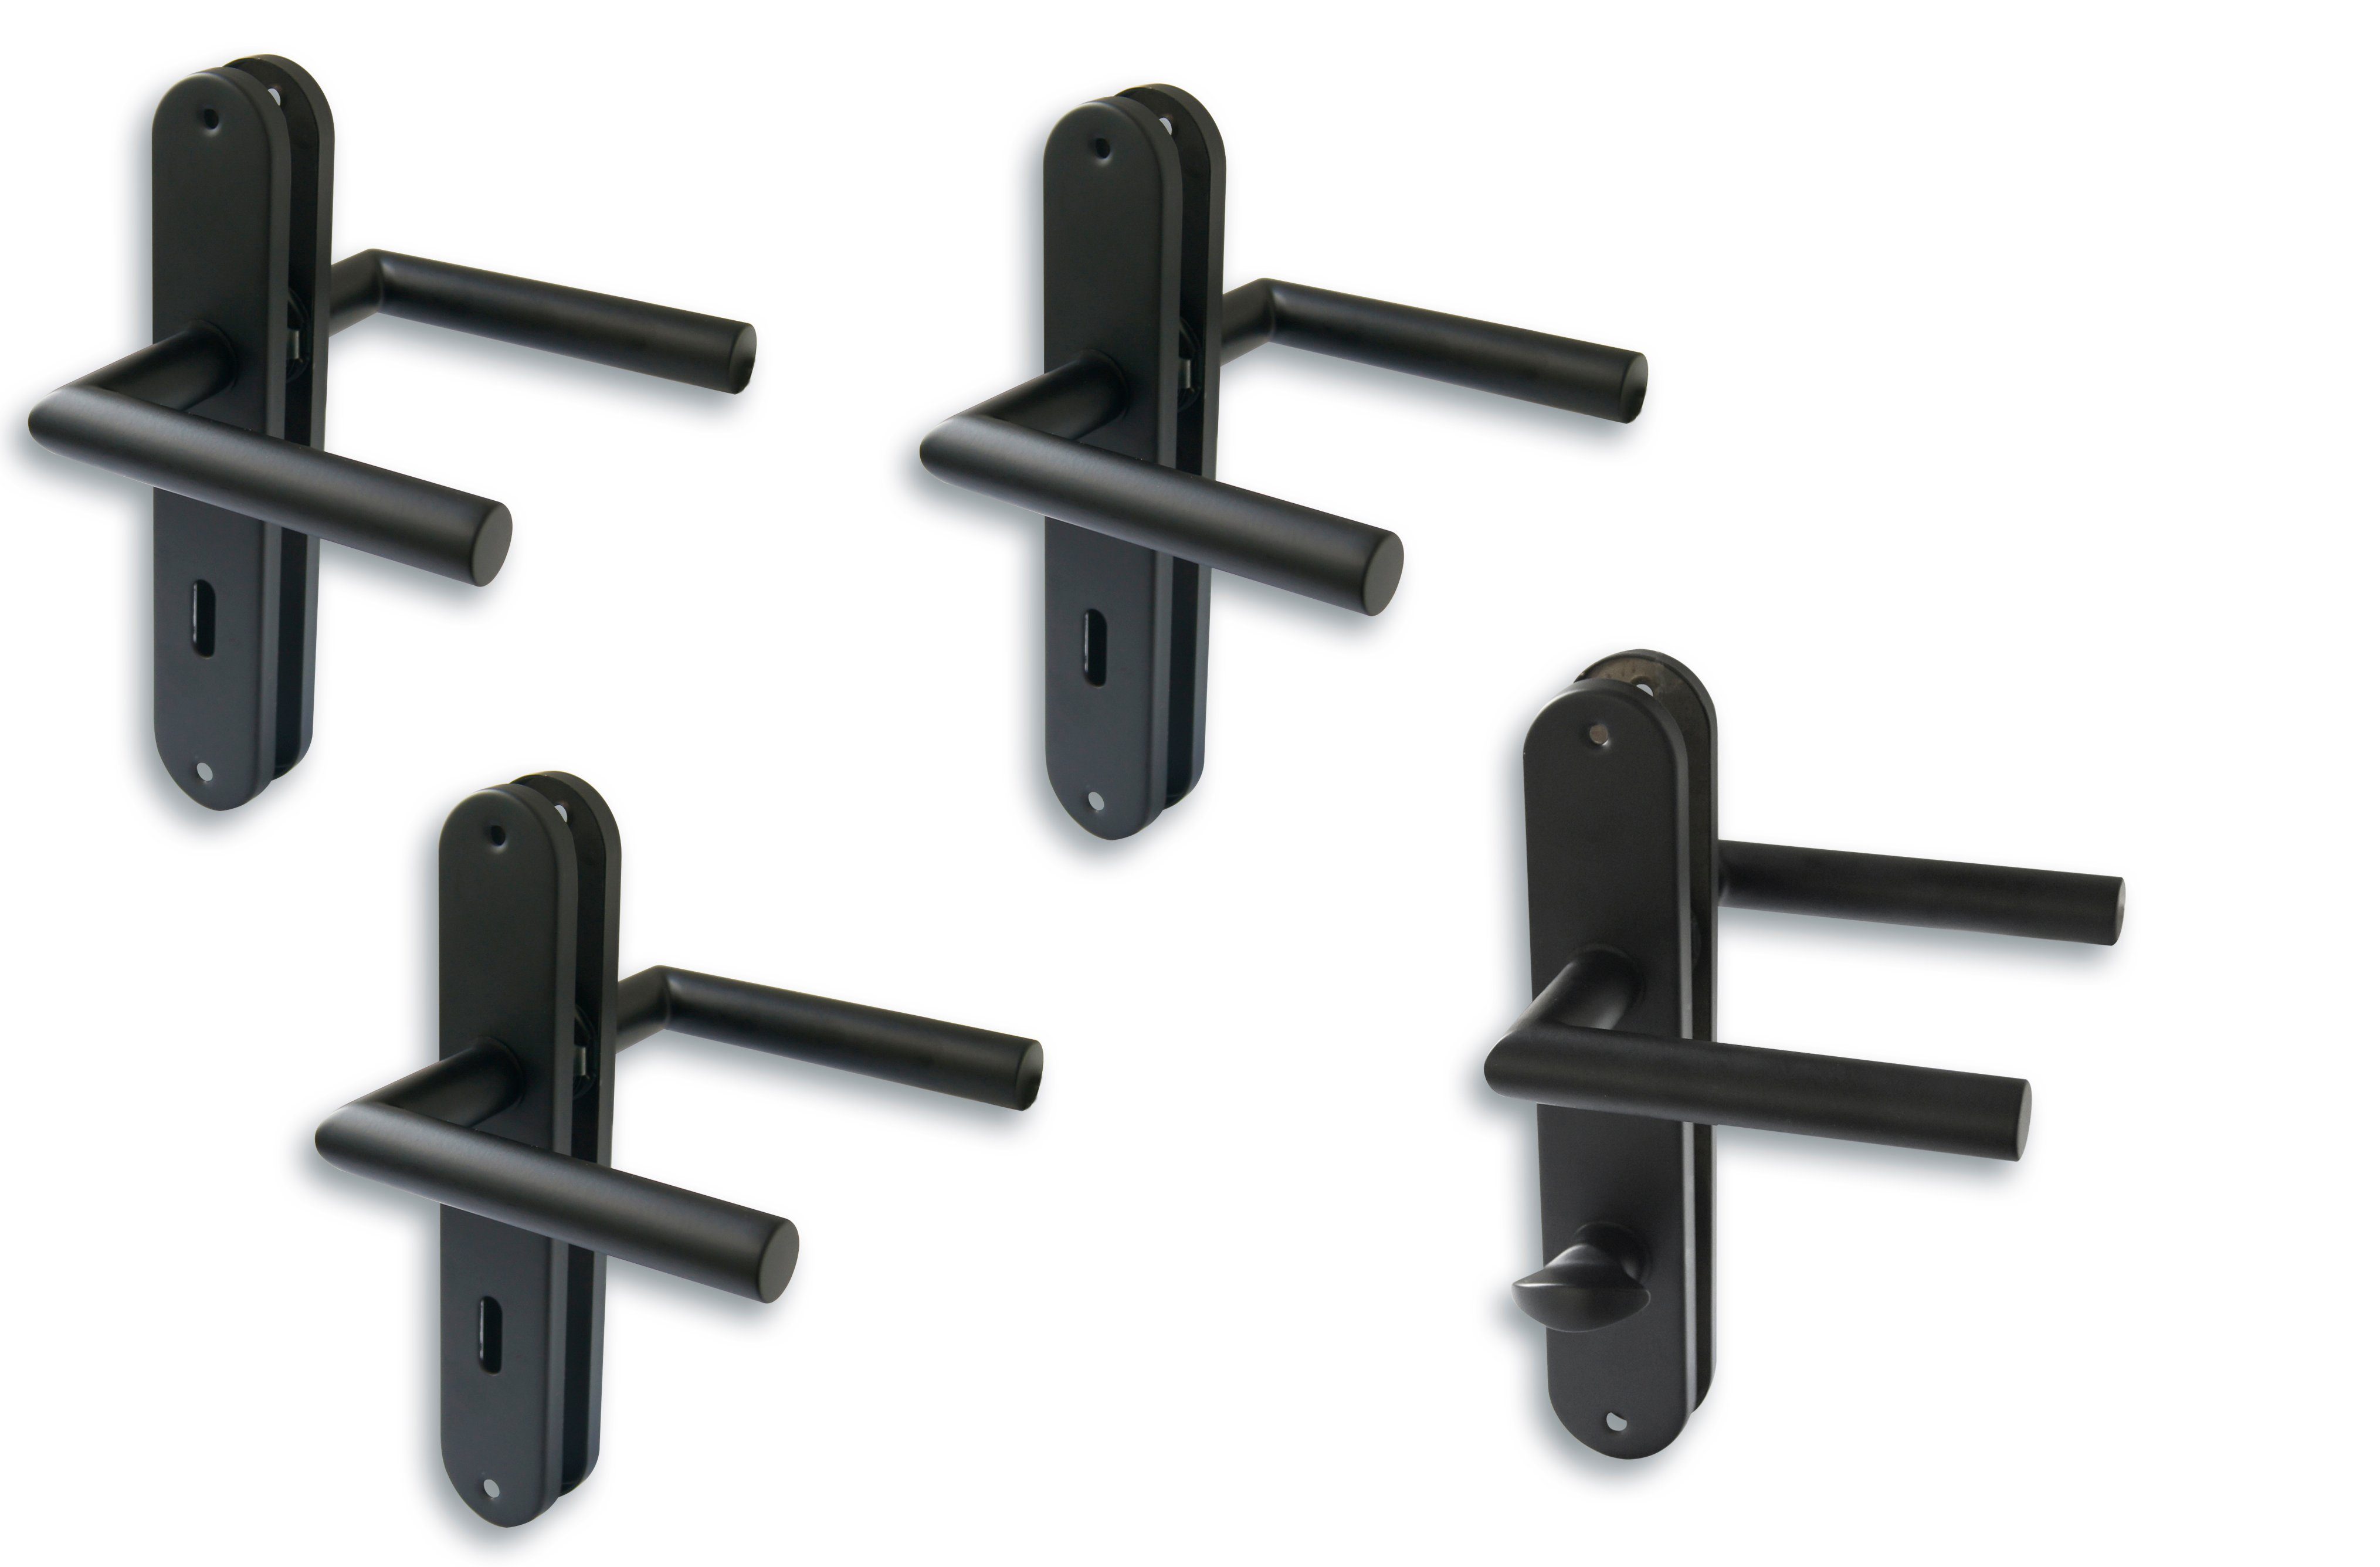 Langschildgarnitur ES 4 1 St), 3 schwarz für Alpertec Edelstahl 4er Türbeschlag schwarz Set, (Set, Zimmertüren, Bad-WC-Tür